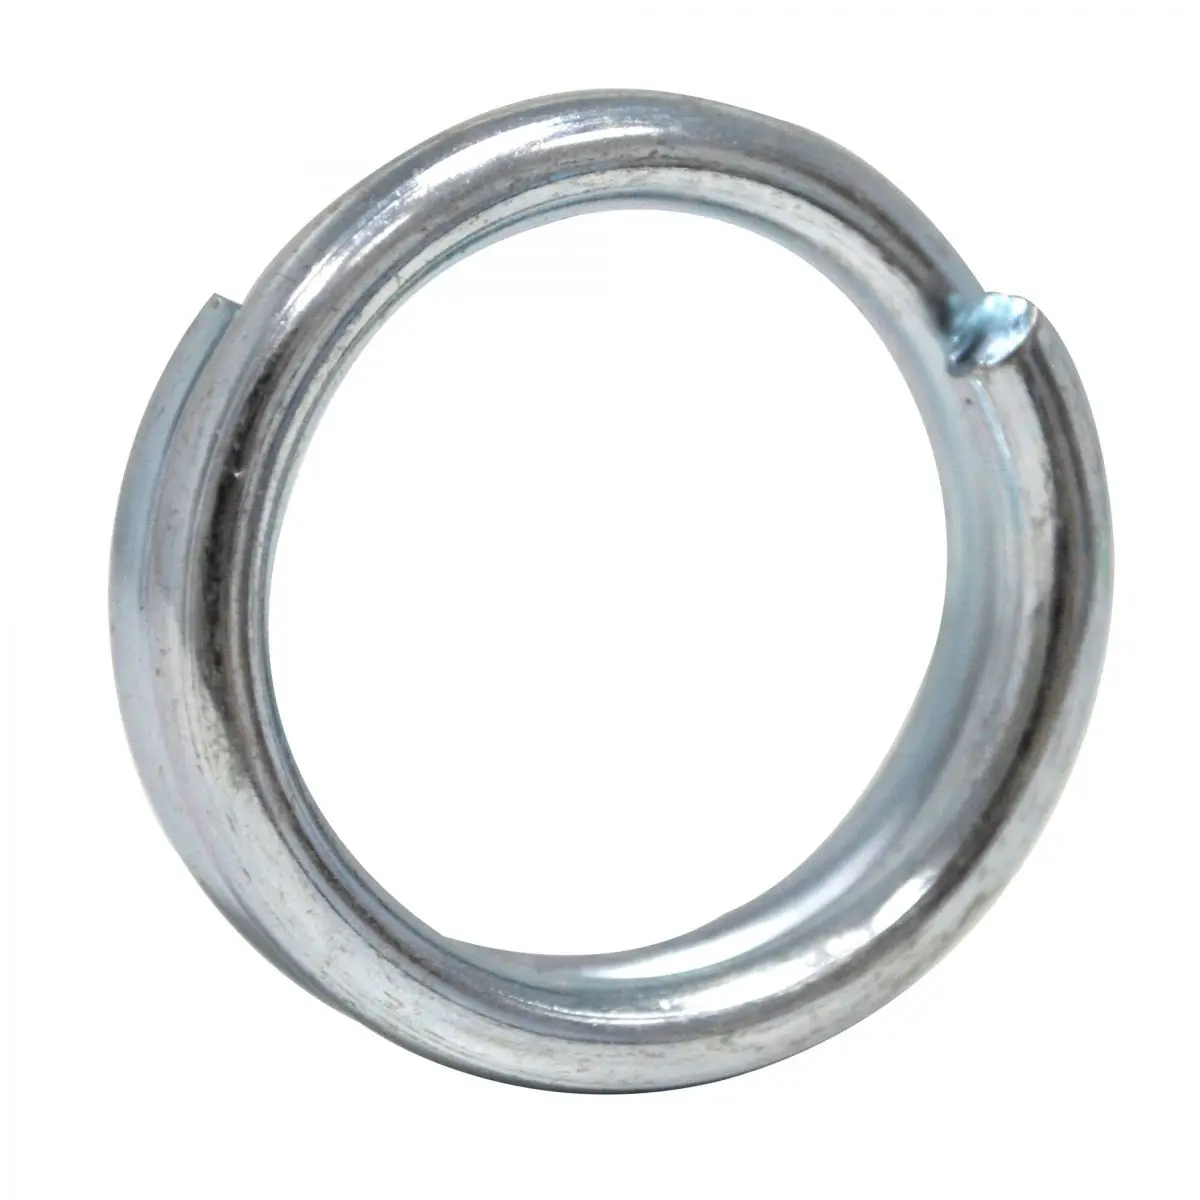 Cseregyűrű - 3,5 cm a leszakadó zsinórhoz